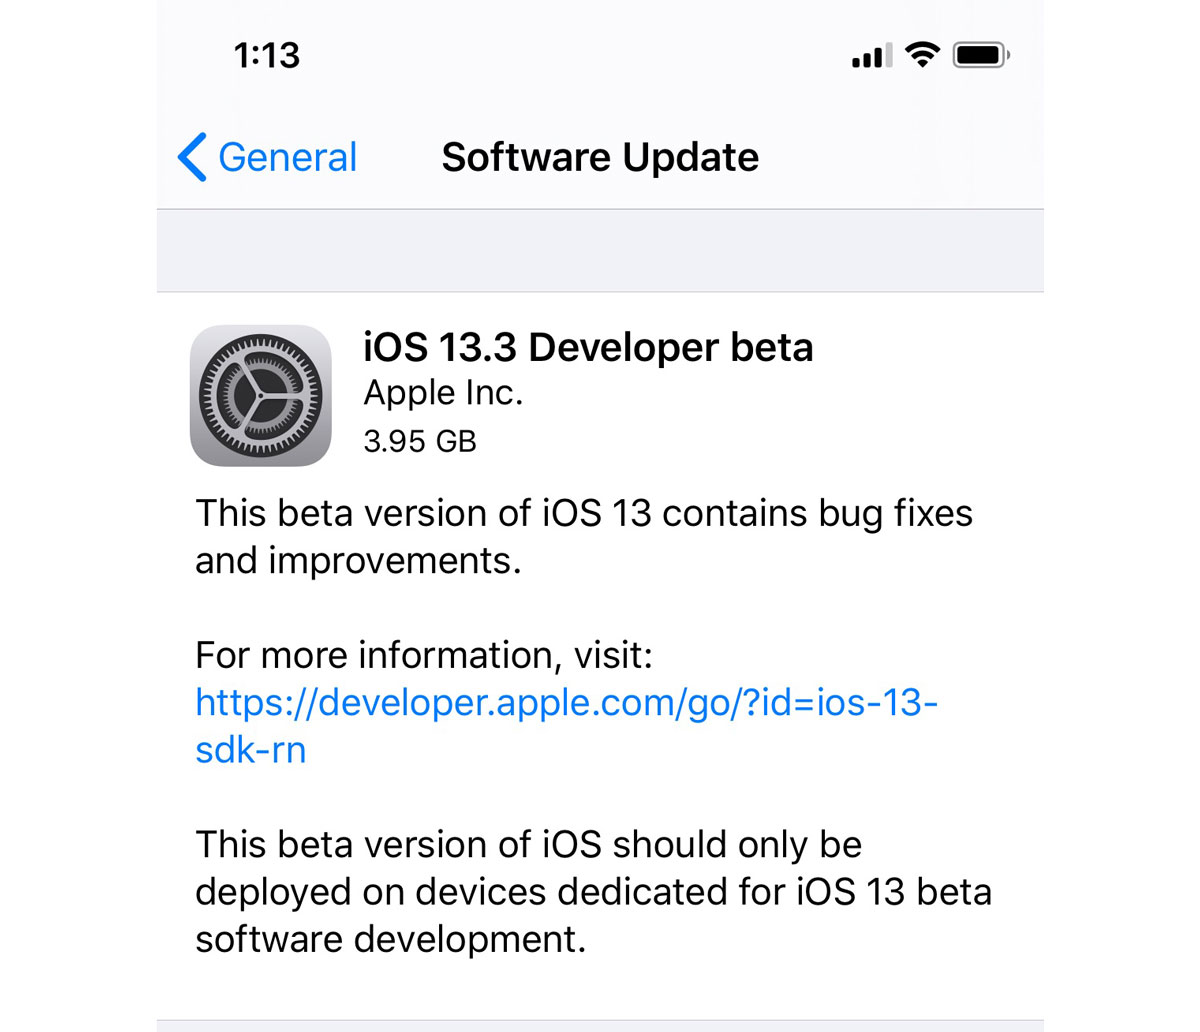 Apple phát hành
iPadOS, iOS 13.3 Developer beta 1 tập trung sửa lỗi đa nhiệm
trên iOS 13.2